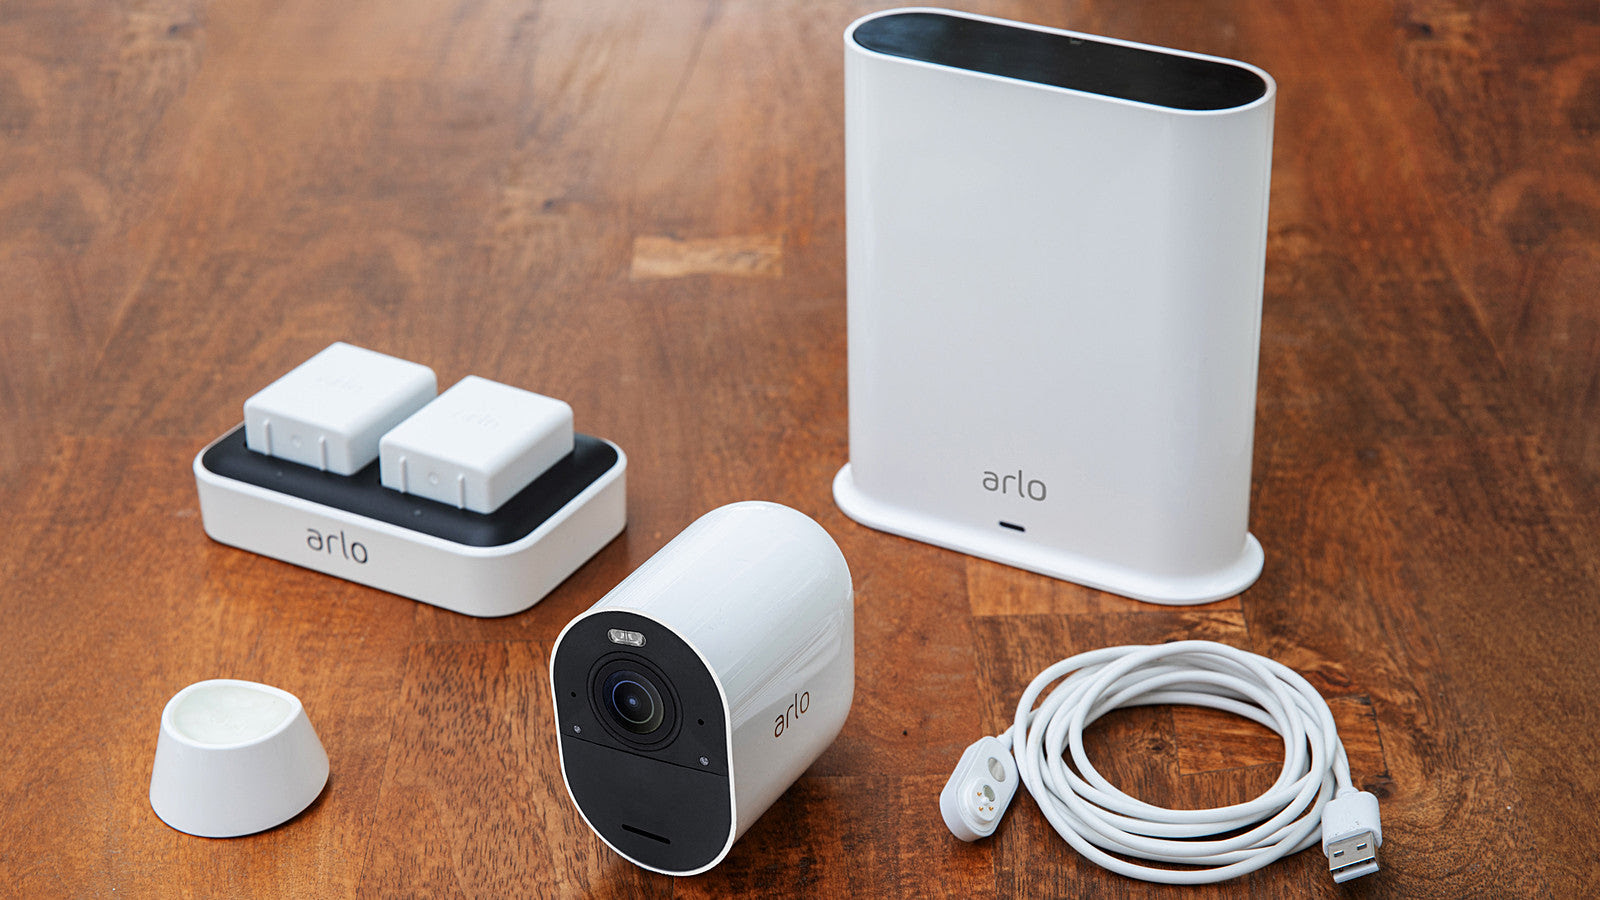 獨家送 Google Home Mini 智能喇叭 Arlo Ultra 全無線攝影機最抵優惠